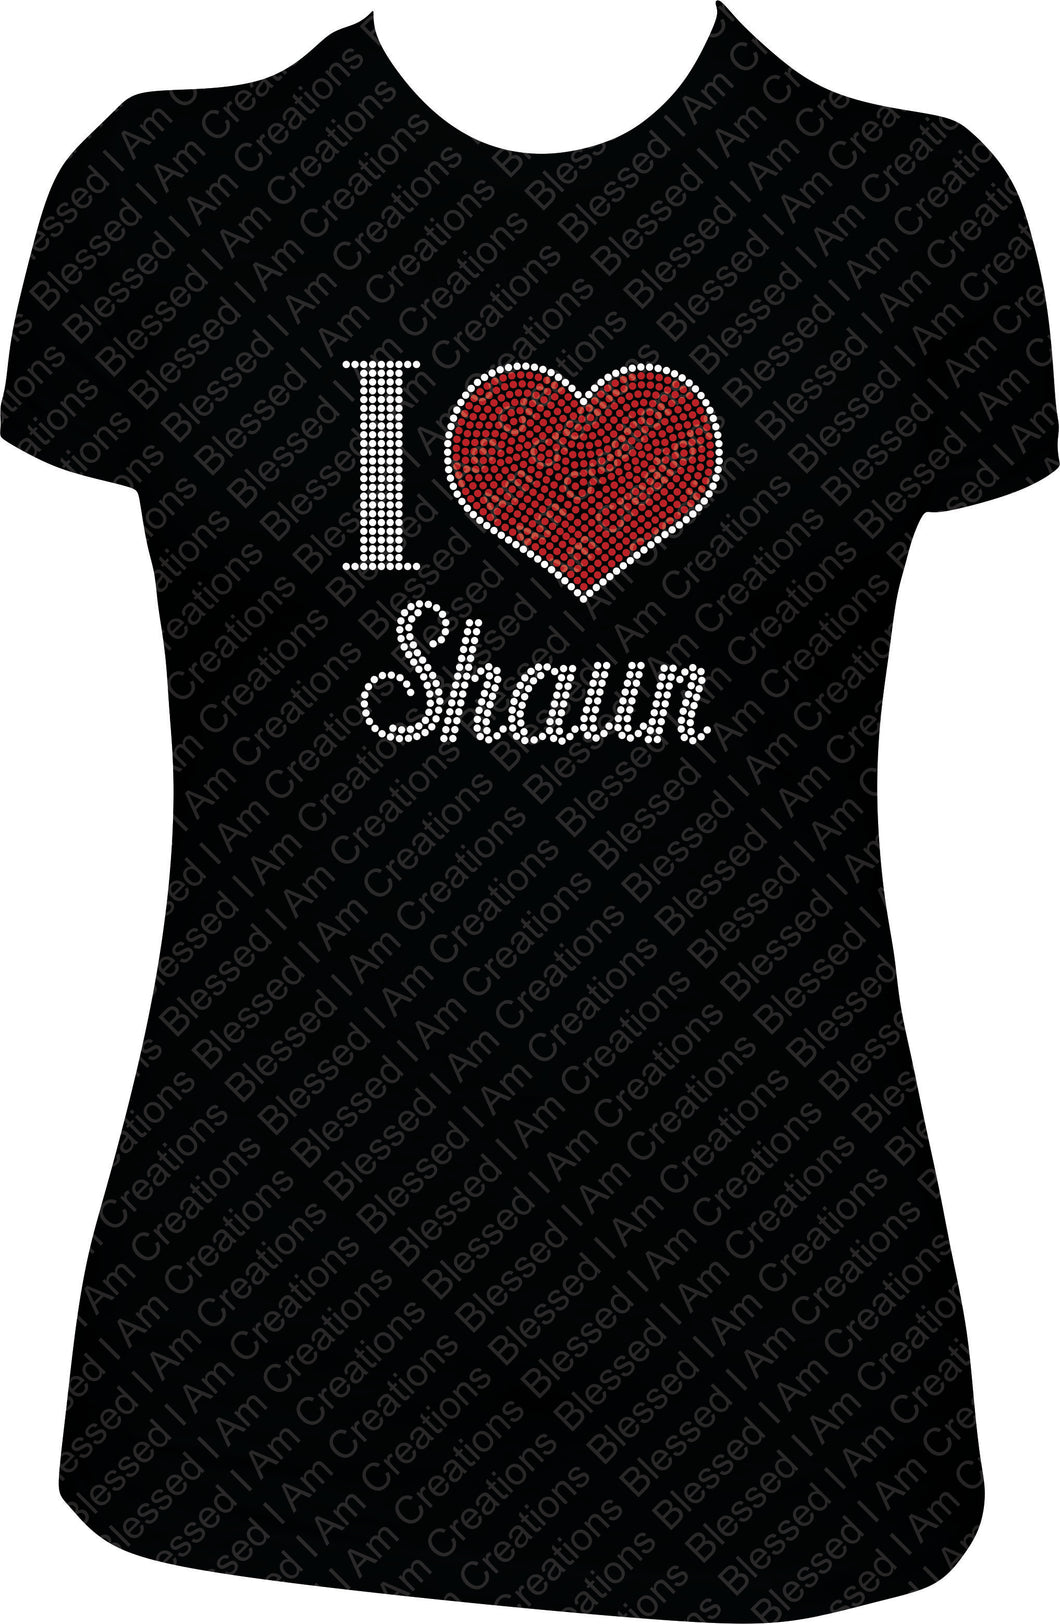 I love Shaun